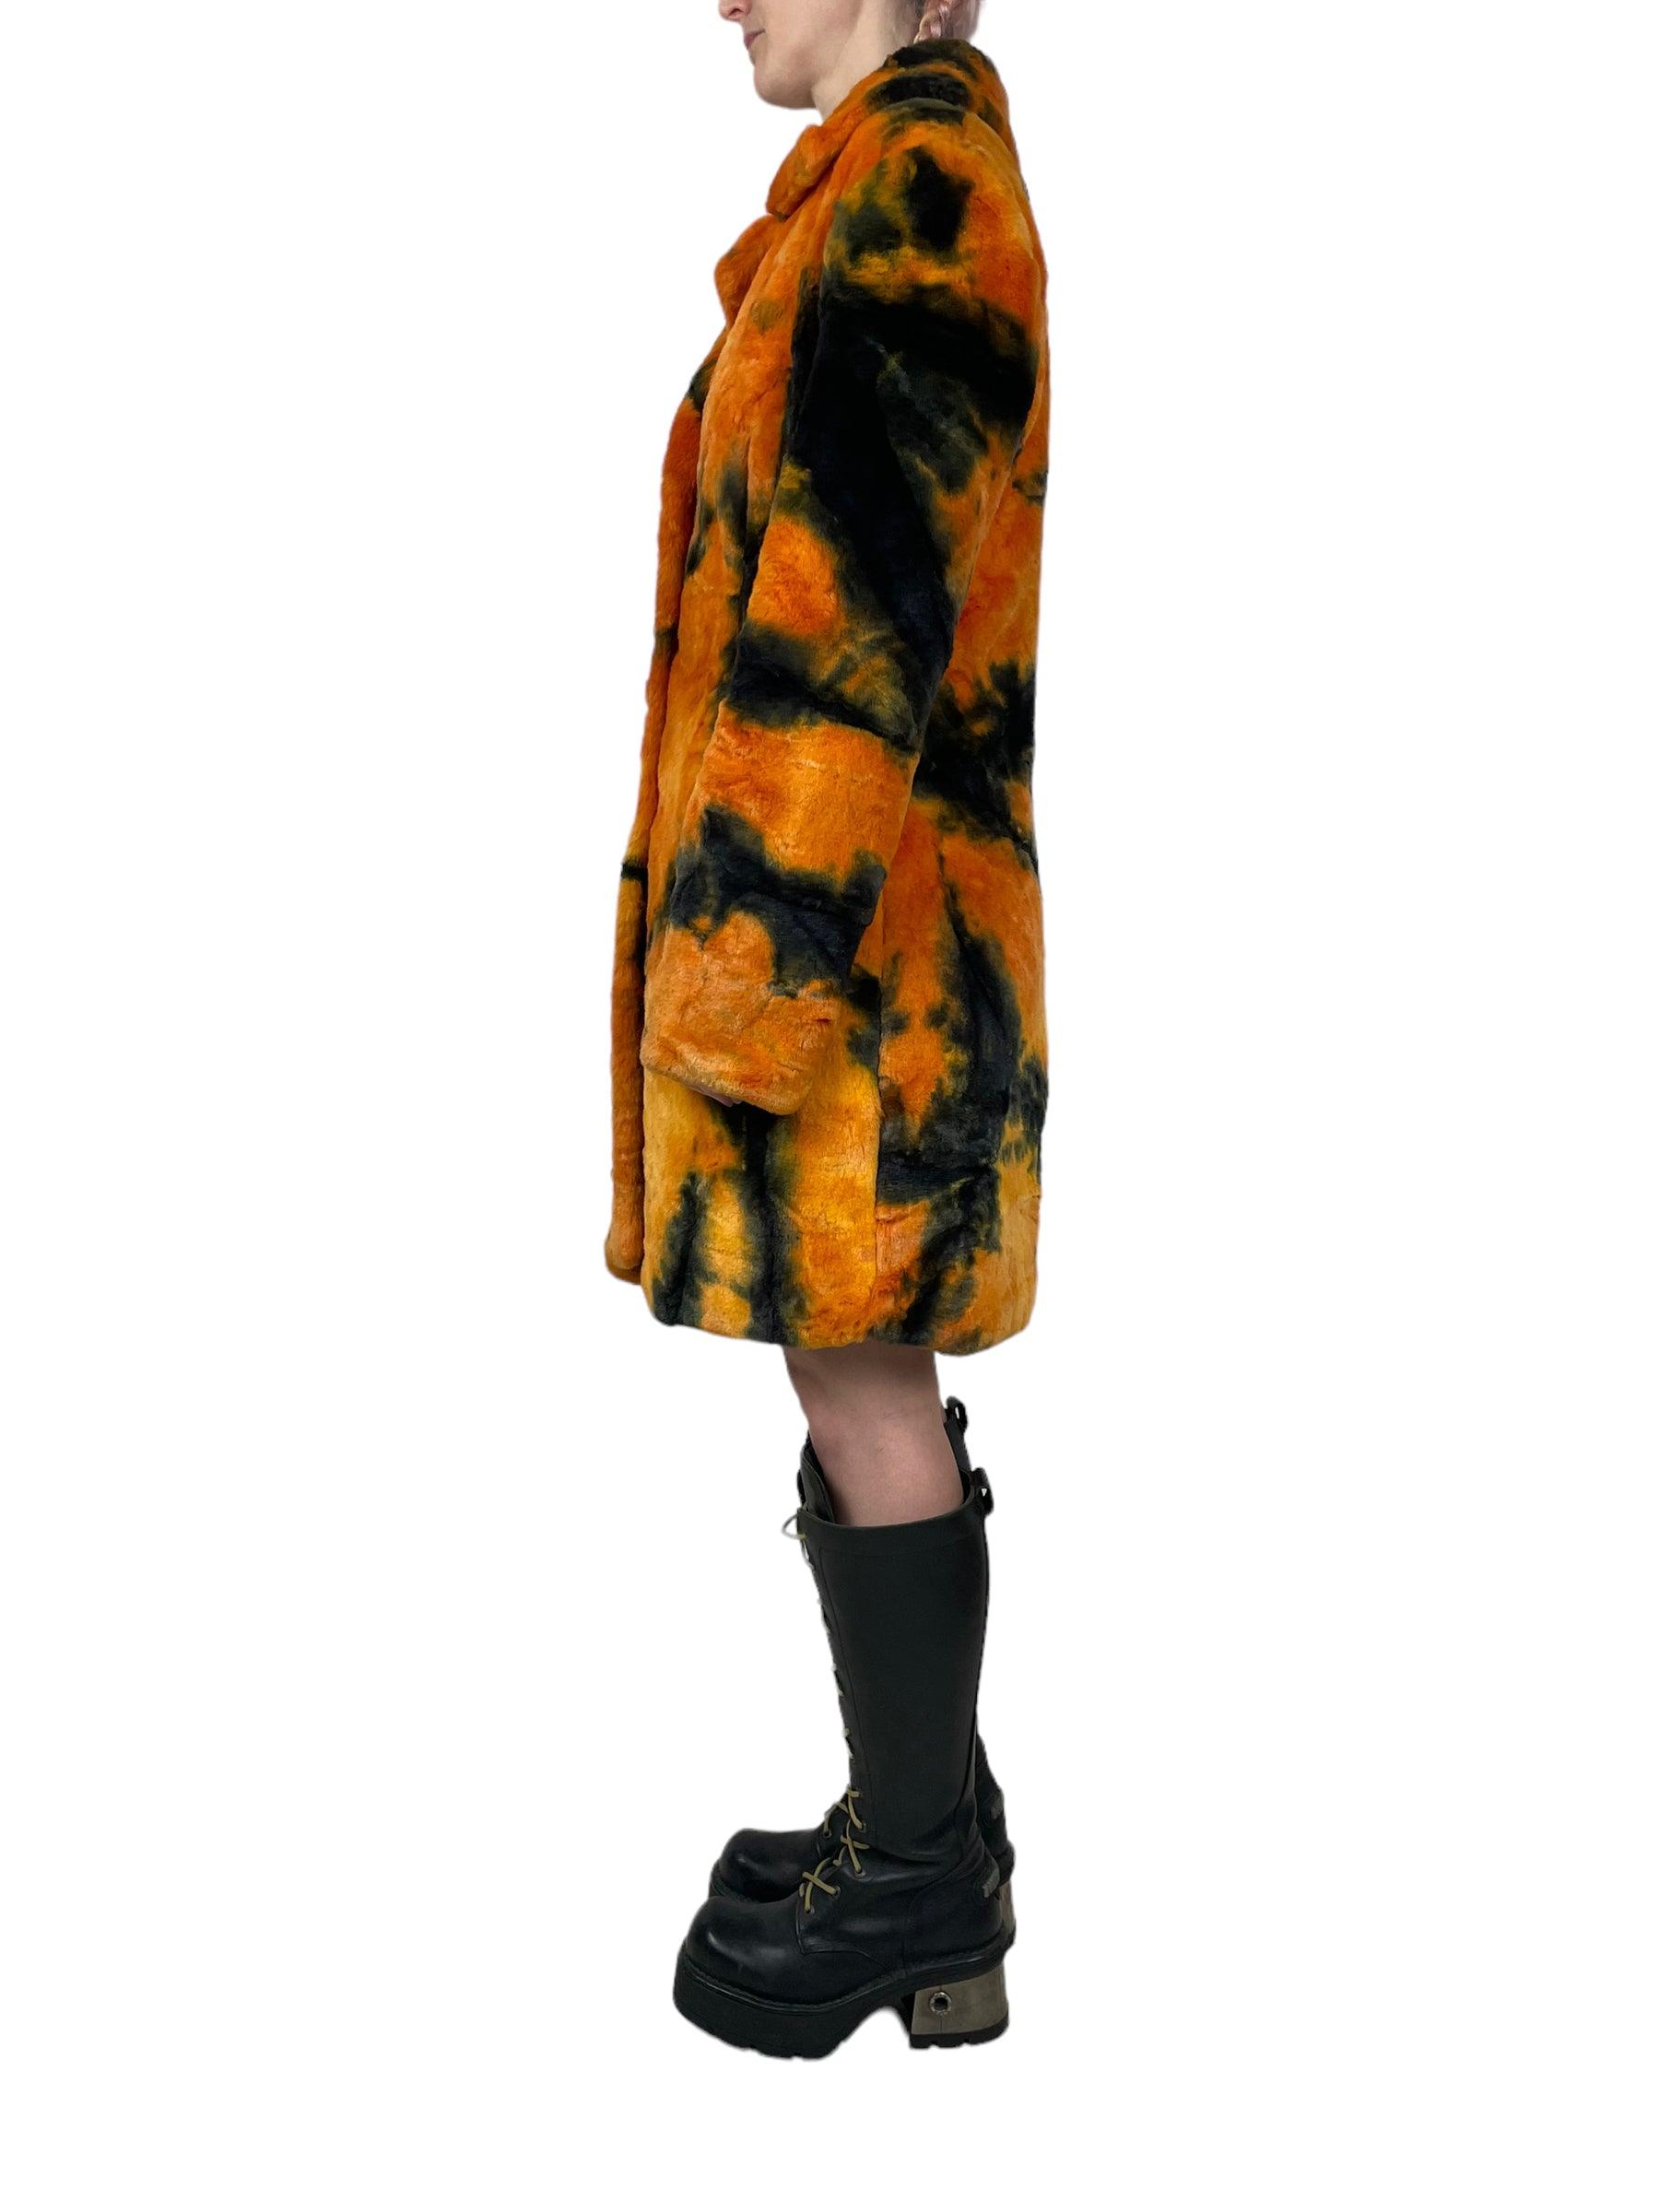 1990s Emanuela faux fur coat - Known Source